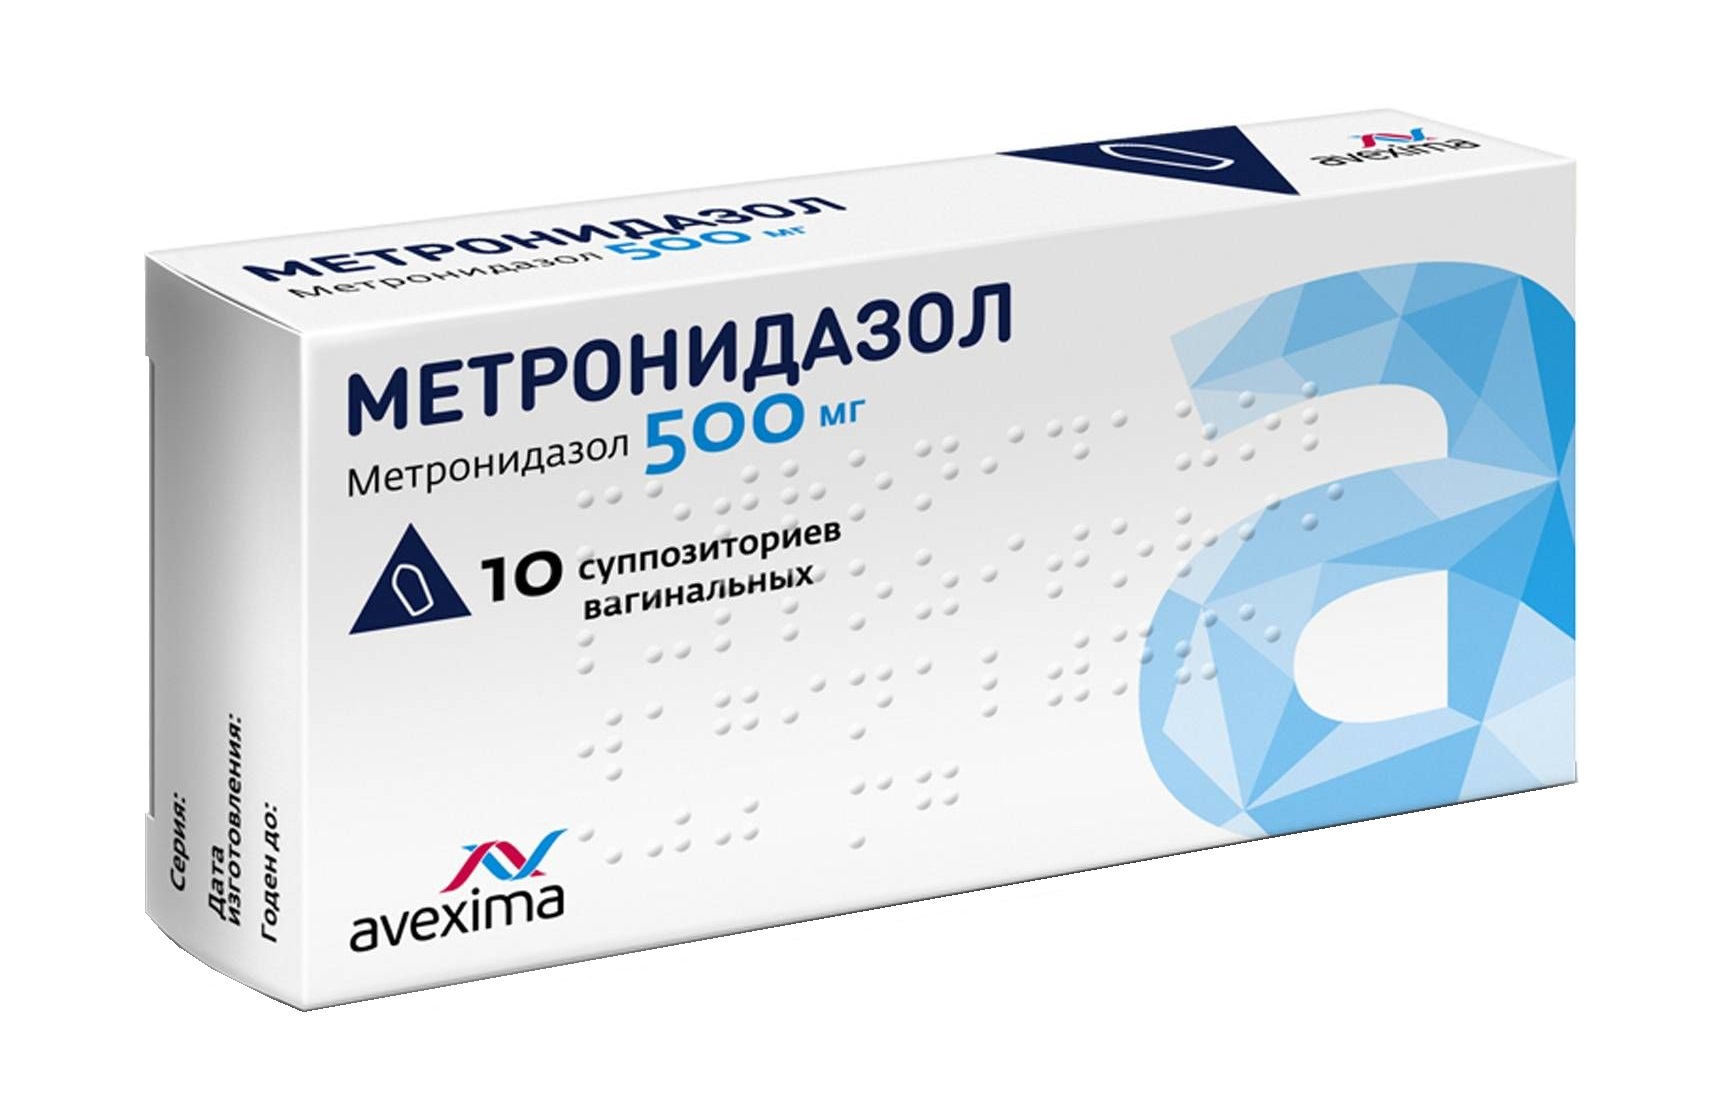 Метронидазол супп ваг 500мг N10 цена 165 руб ,  .